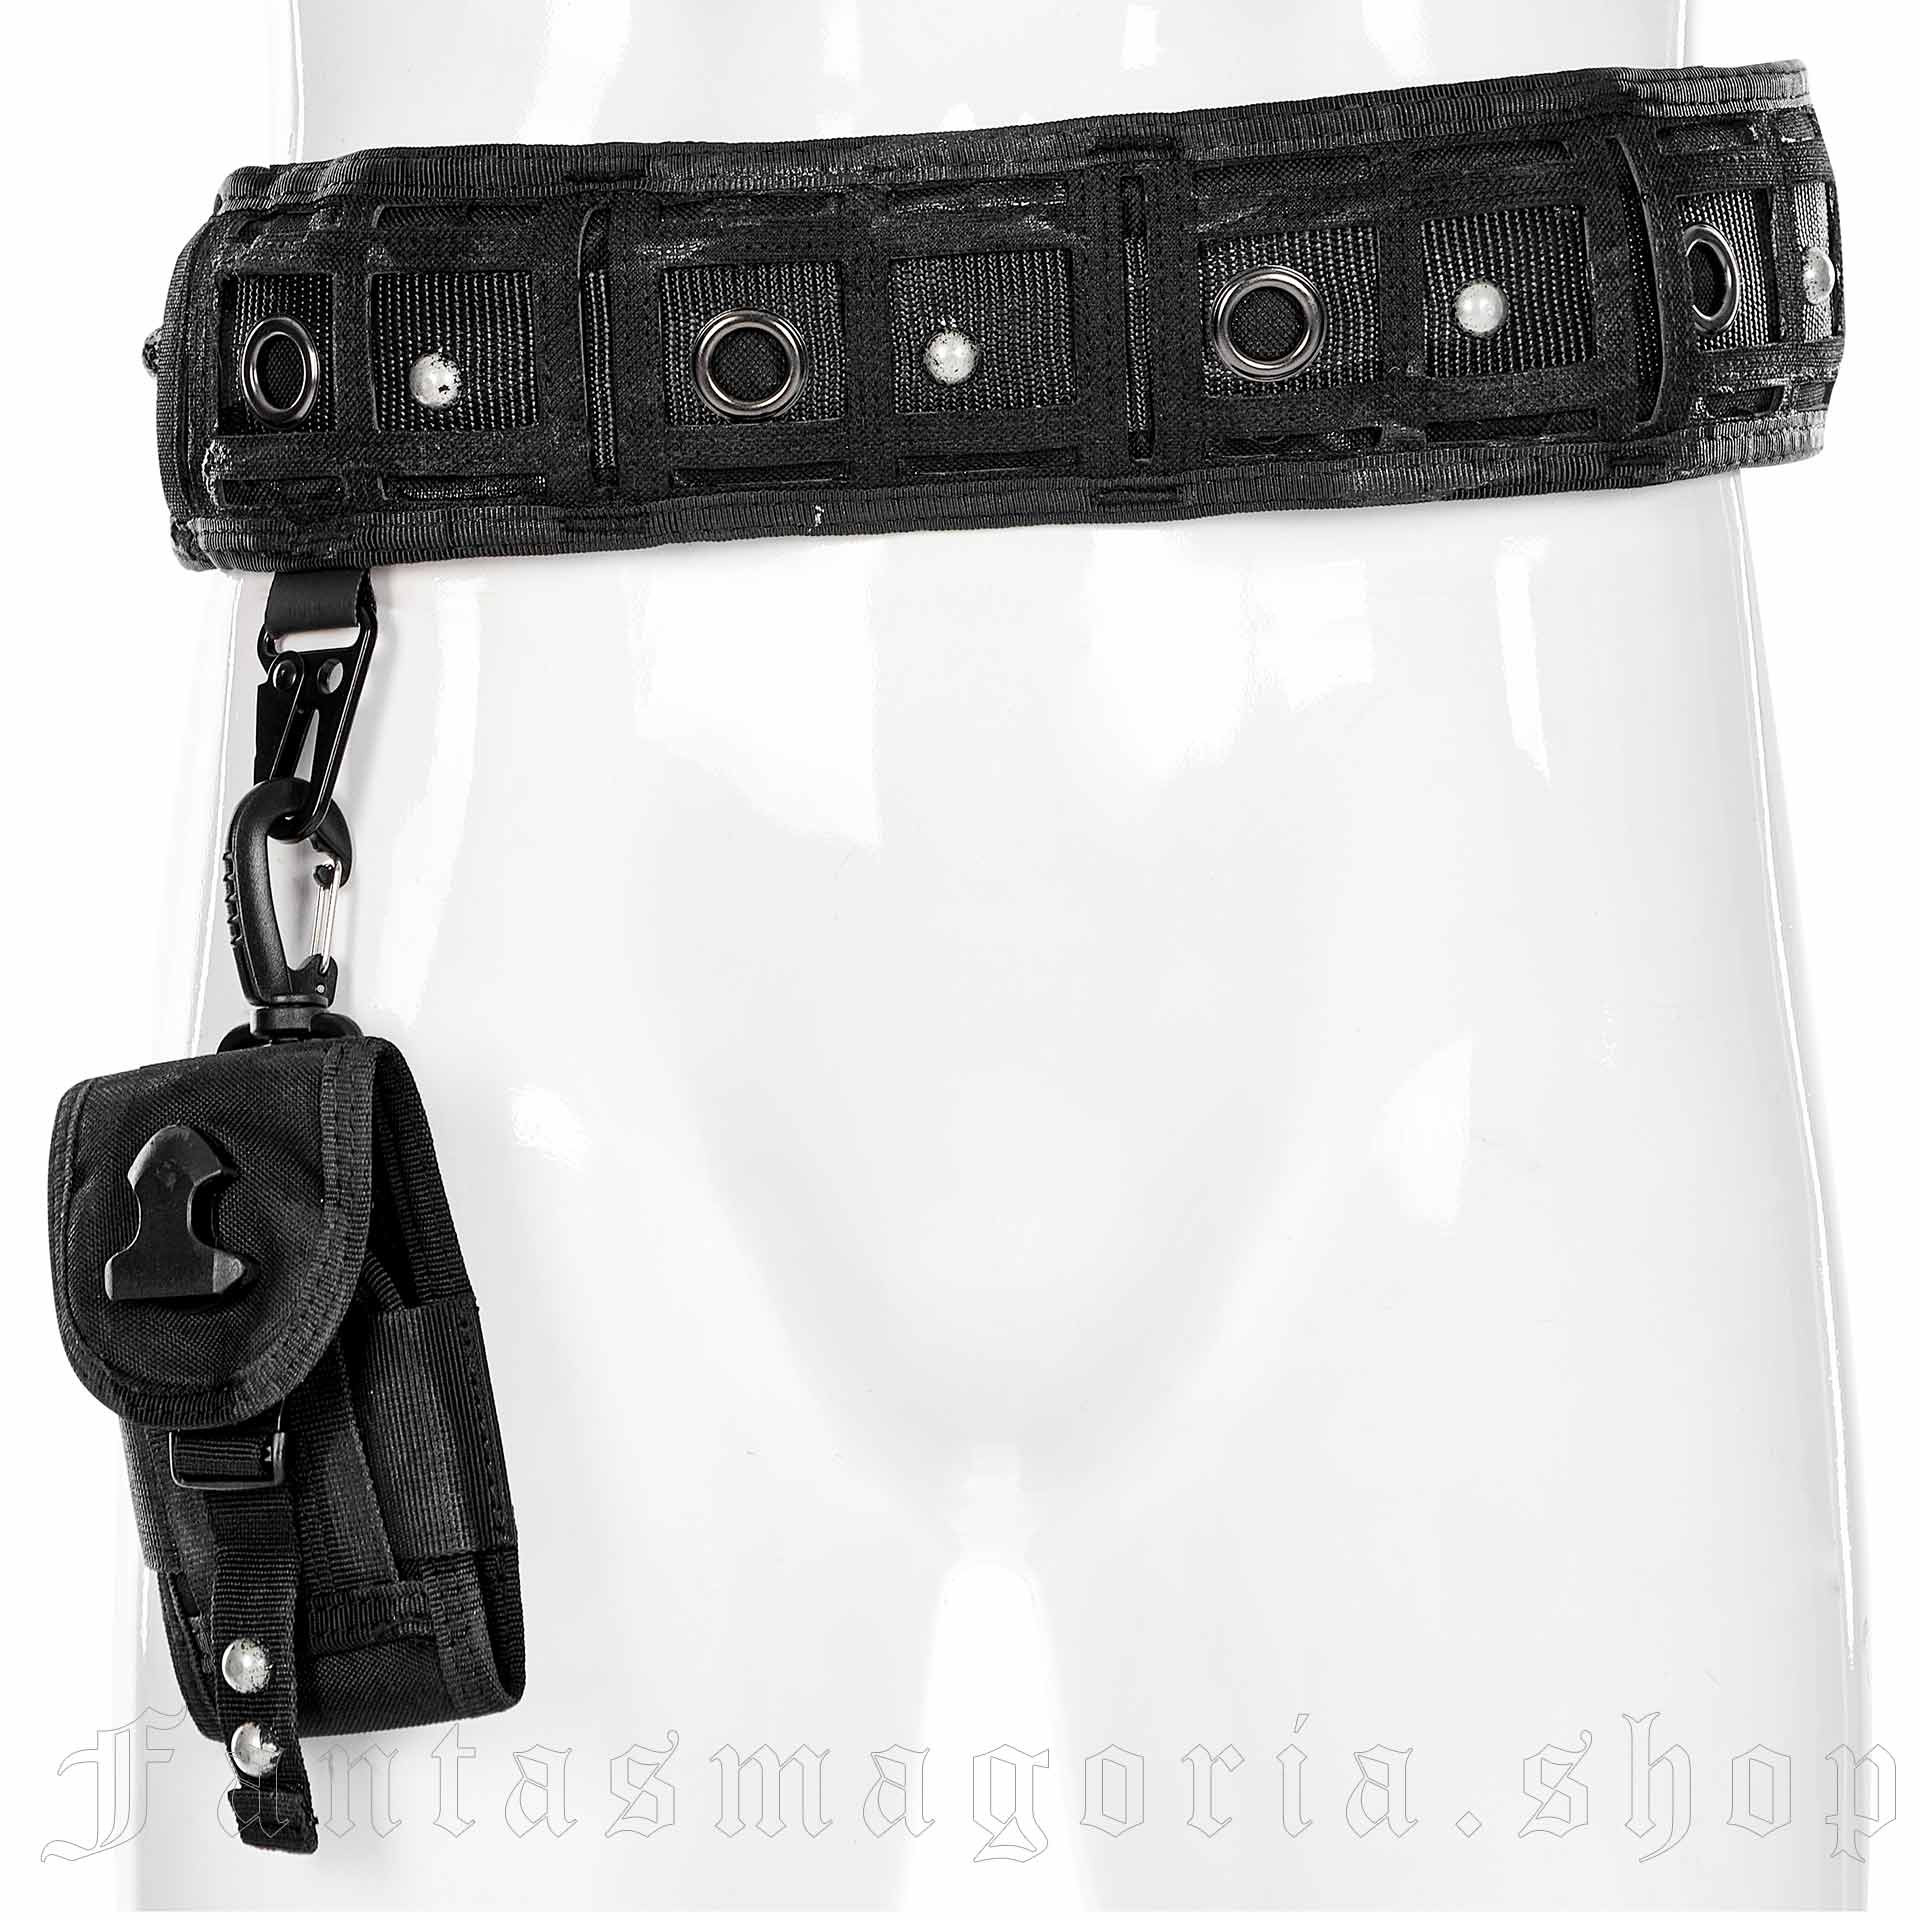 The Gun Slinger Leather Crossbody Bag